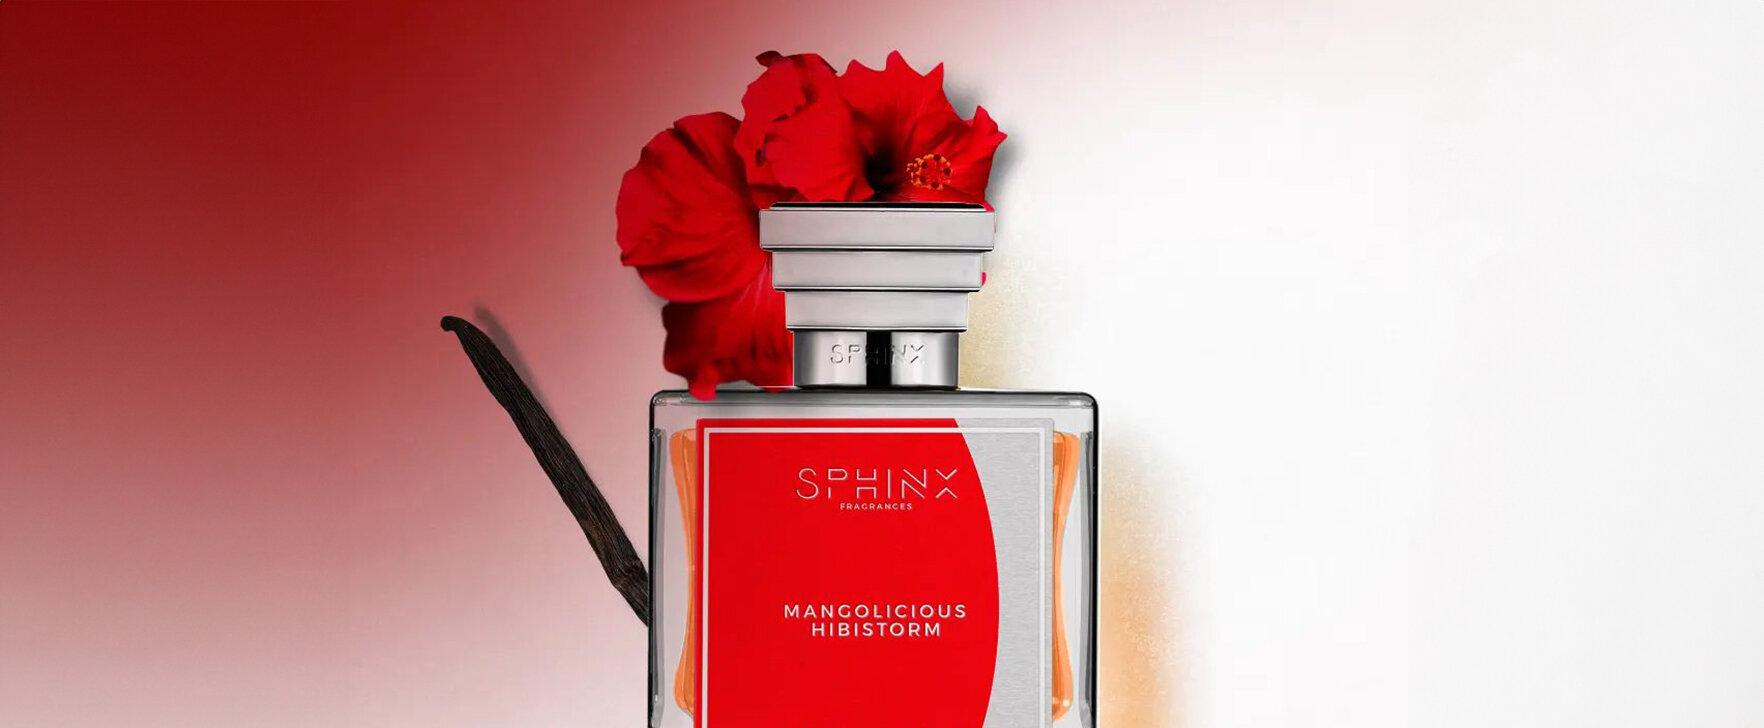 Tropical Temptation: The New Extrait de Parfum "Mangolicious Hibistorm" by Sphinx